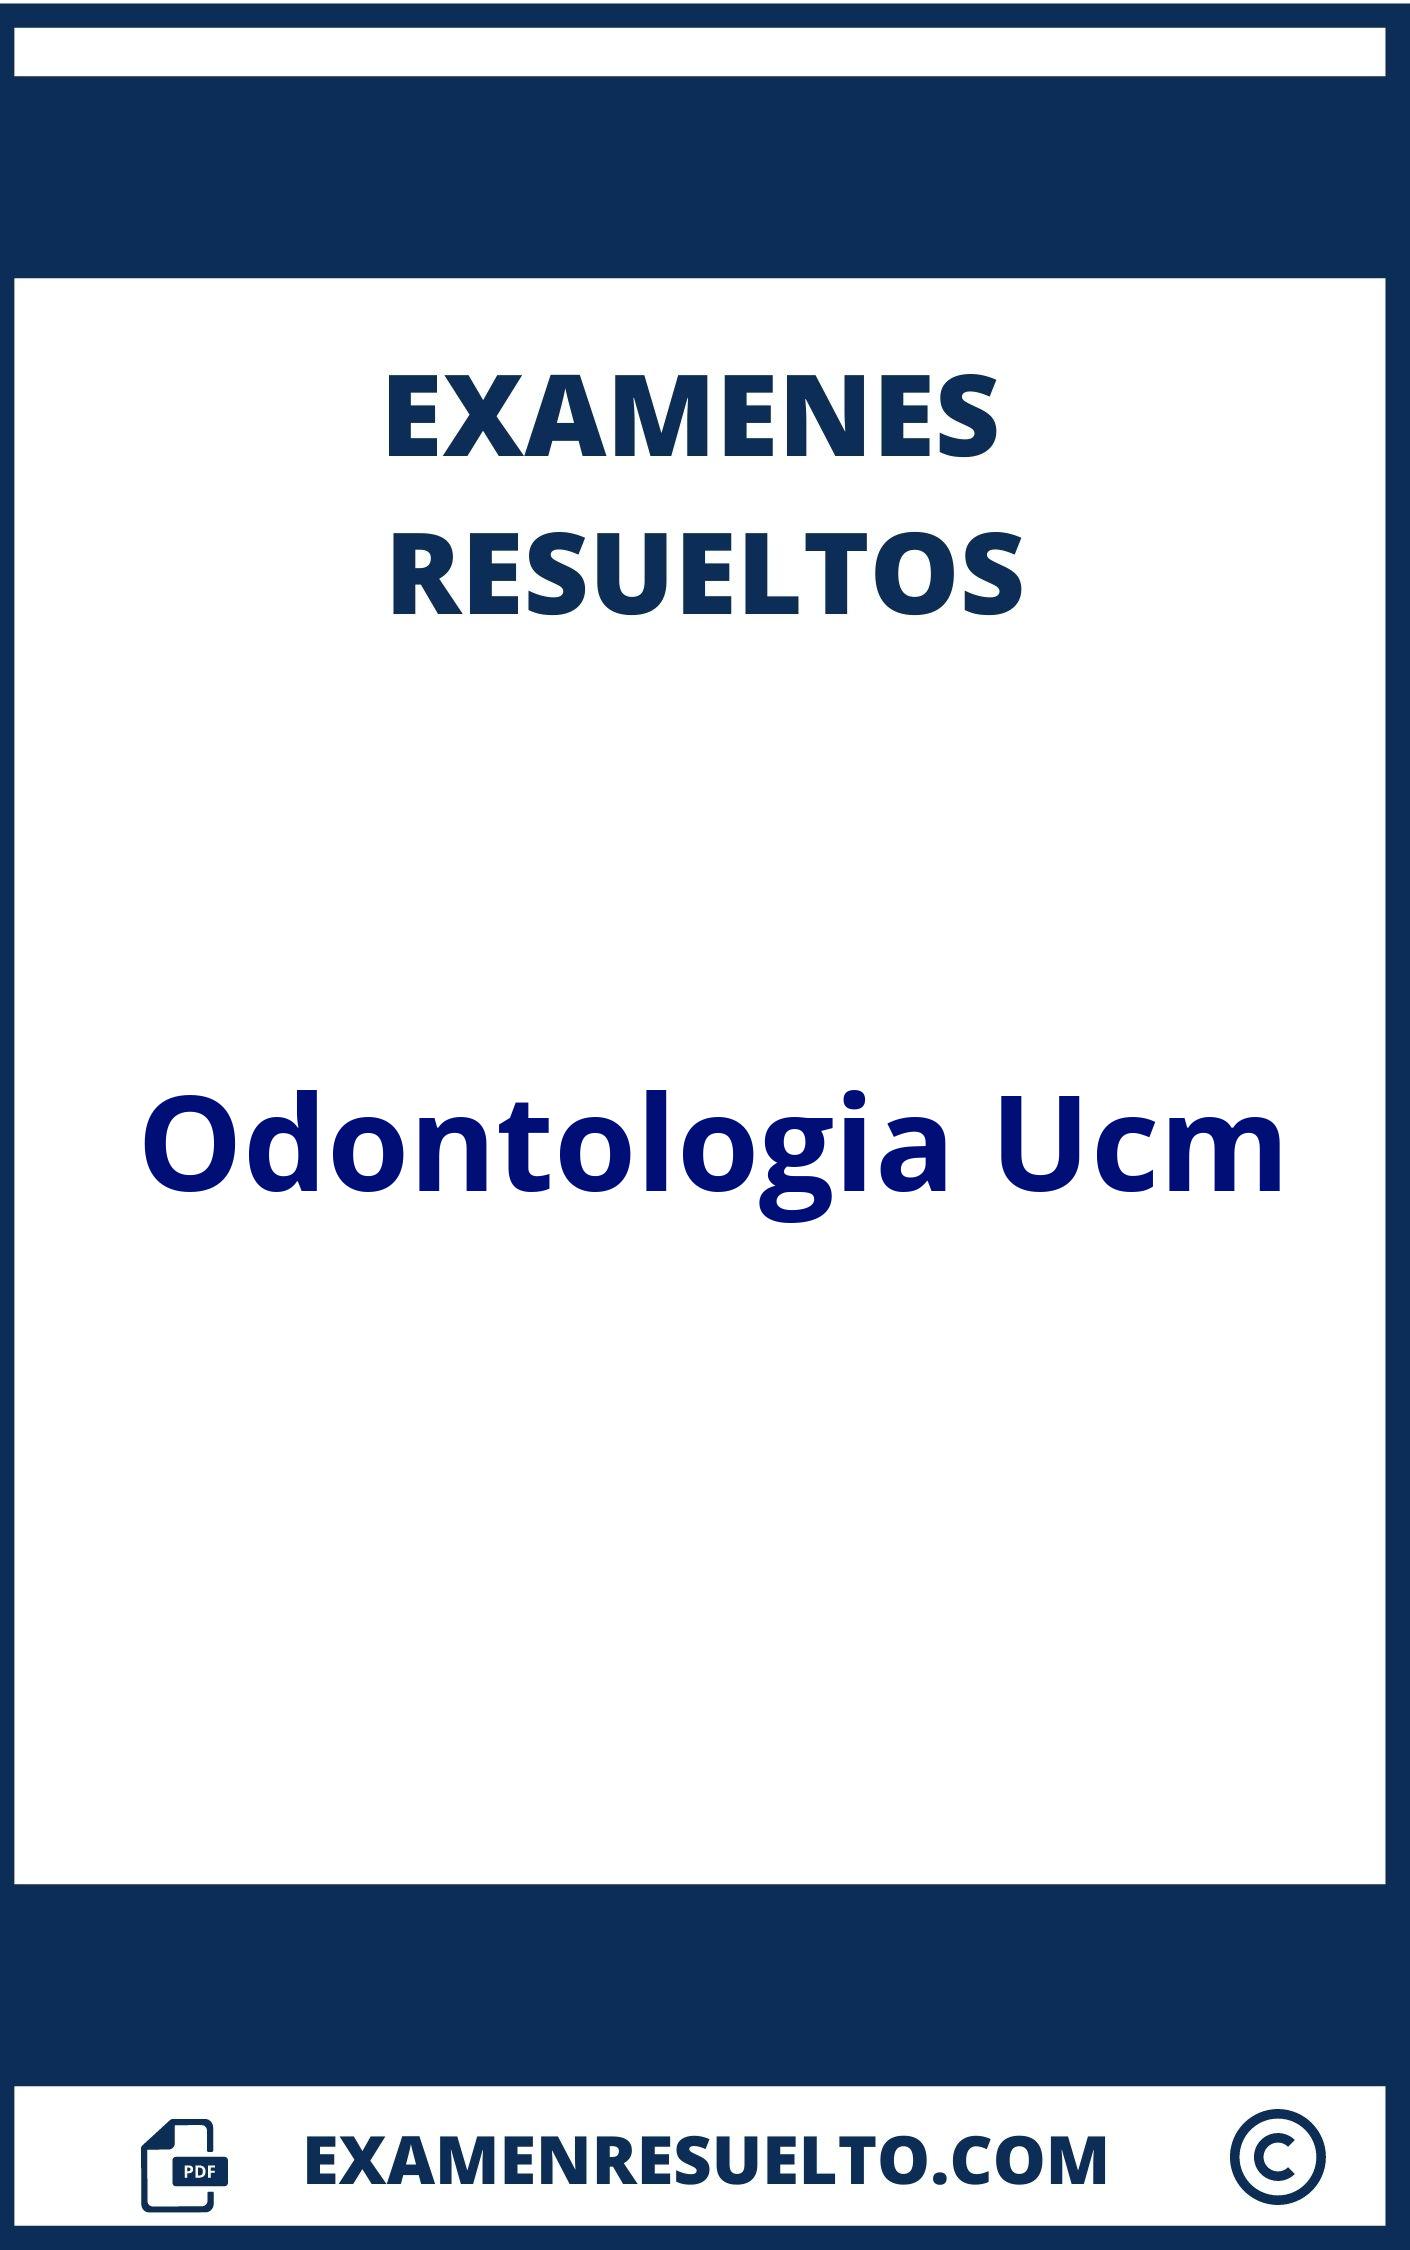 Examenes Odontologia Ucm Resueltos